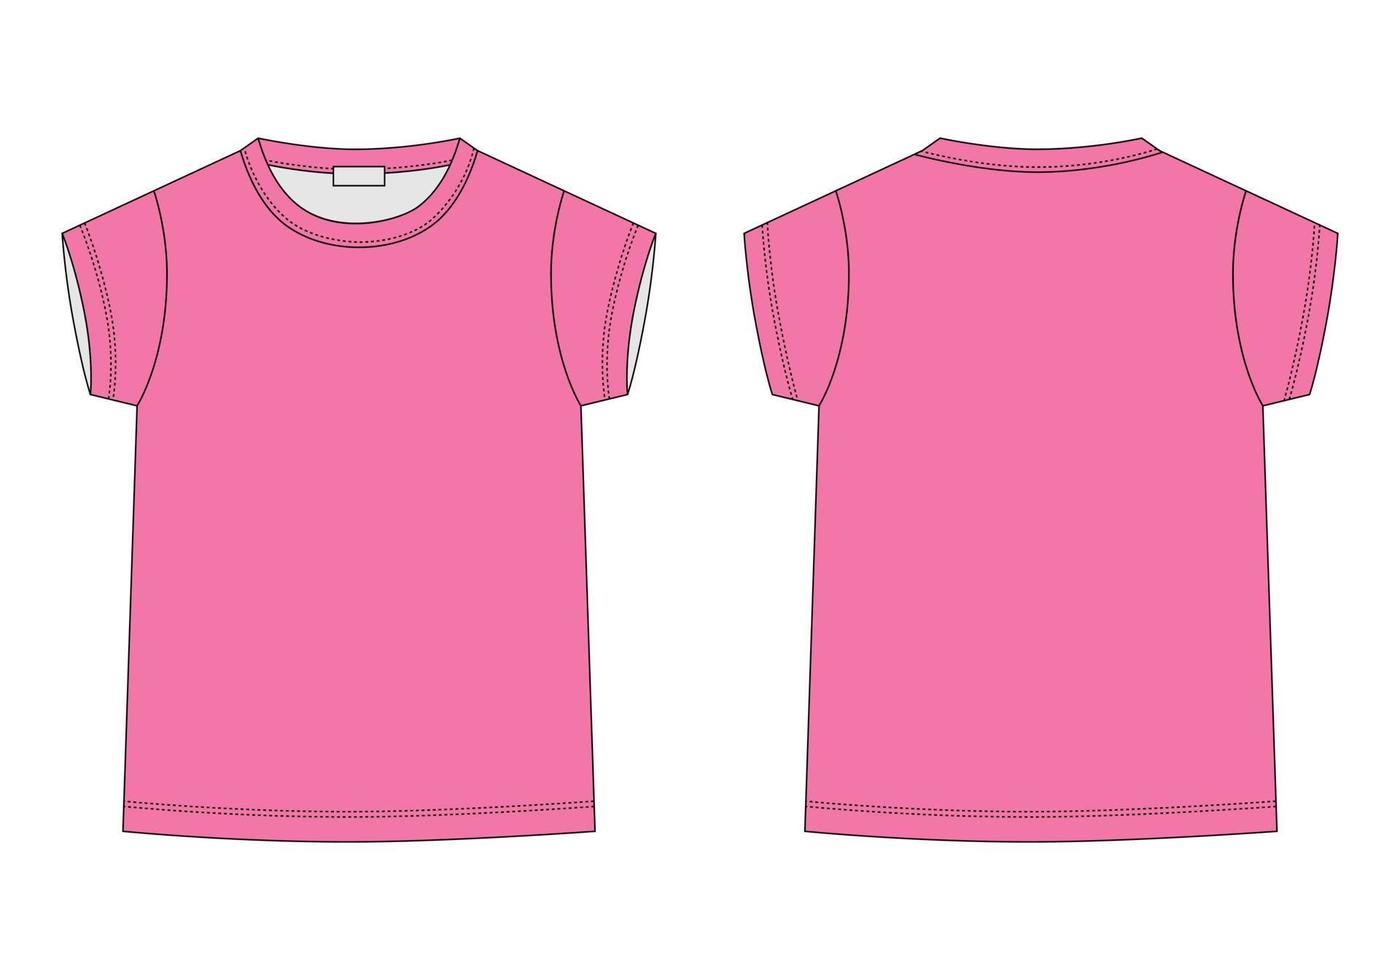 skizzieren Sie das T-Shirt der technischen Skizze der Kinder in den rosa Farben. Kinder-T-Shirt-Design-Vorlage. vektor